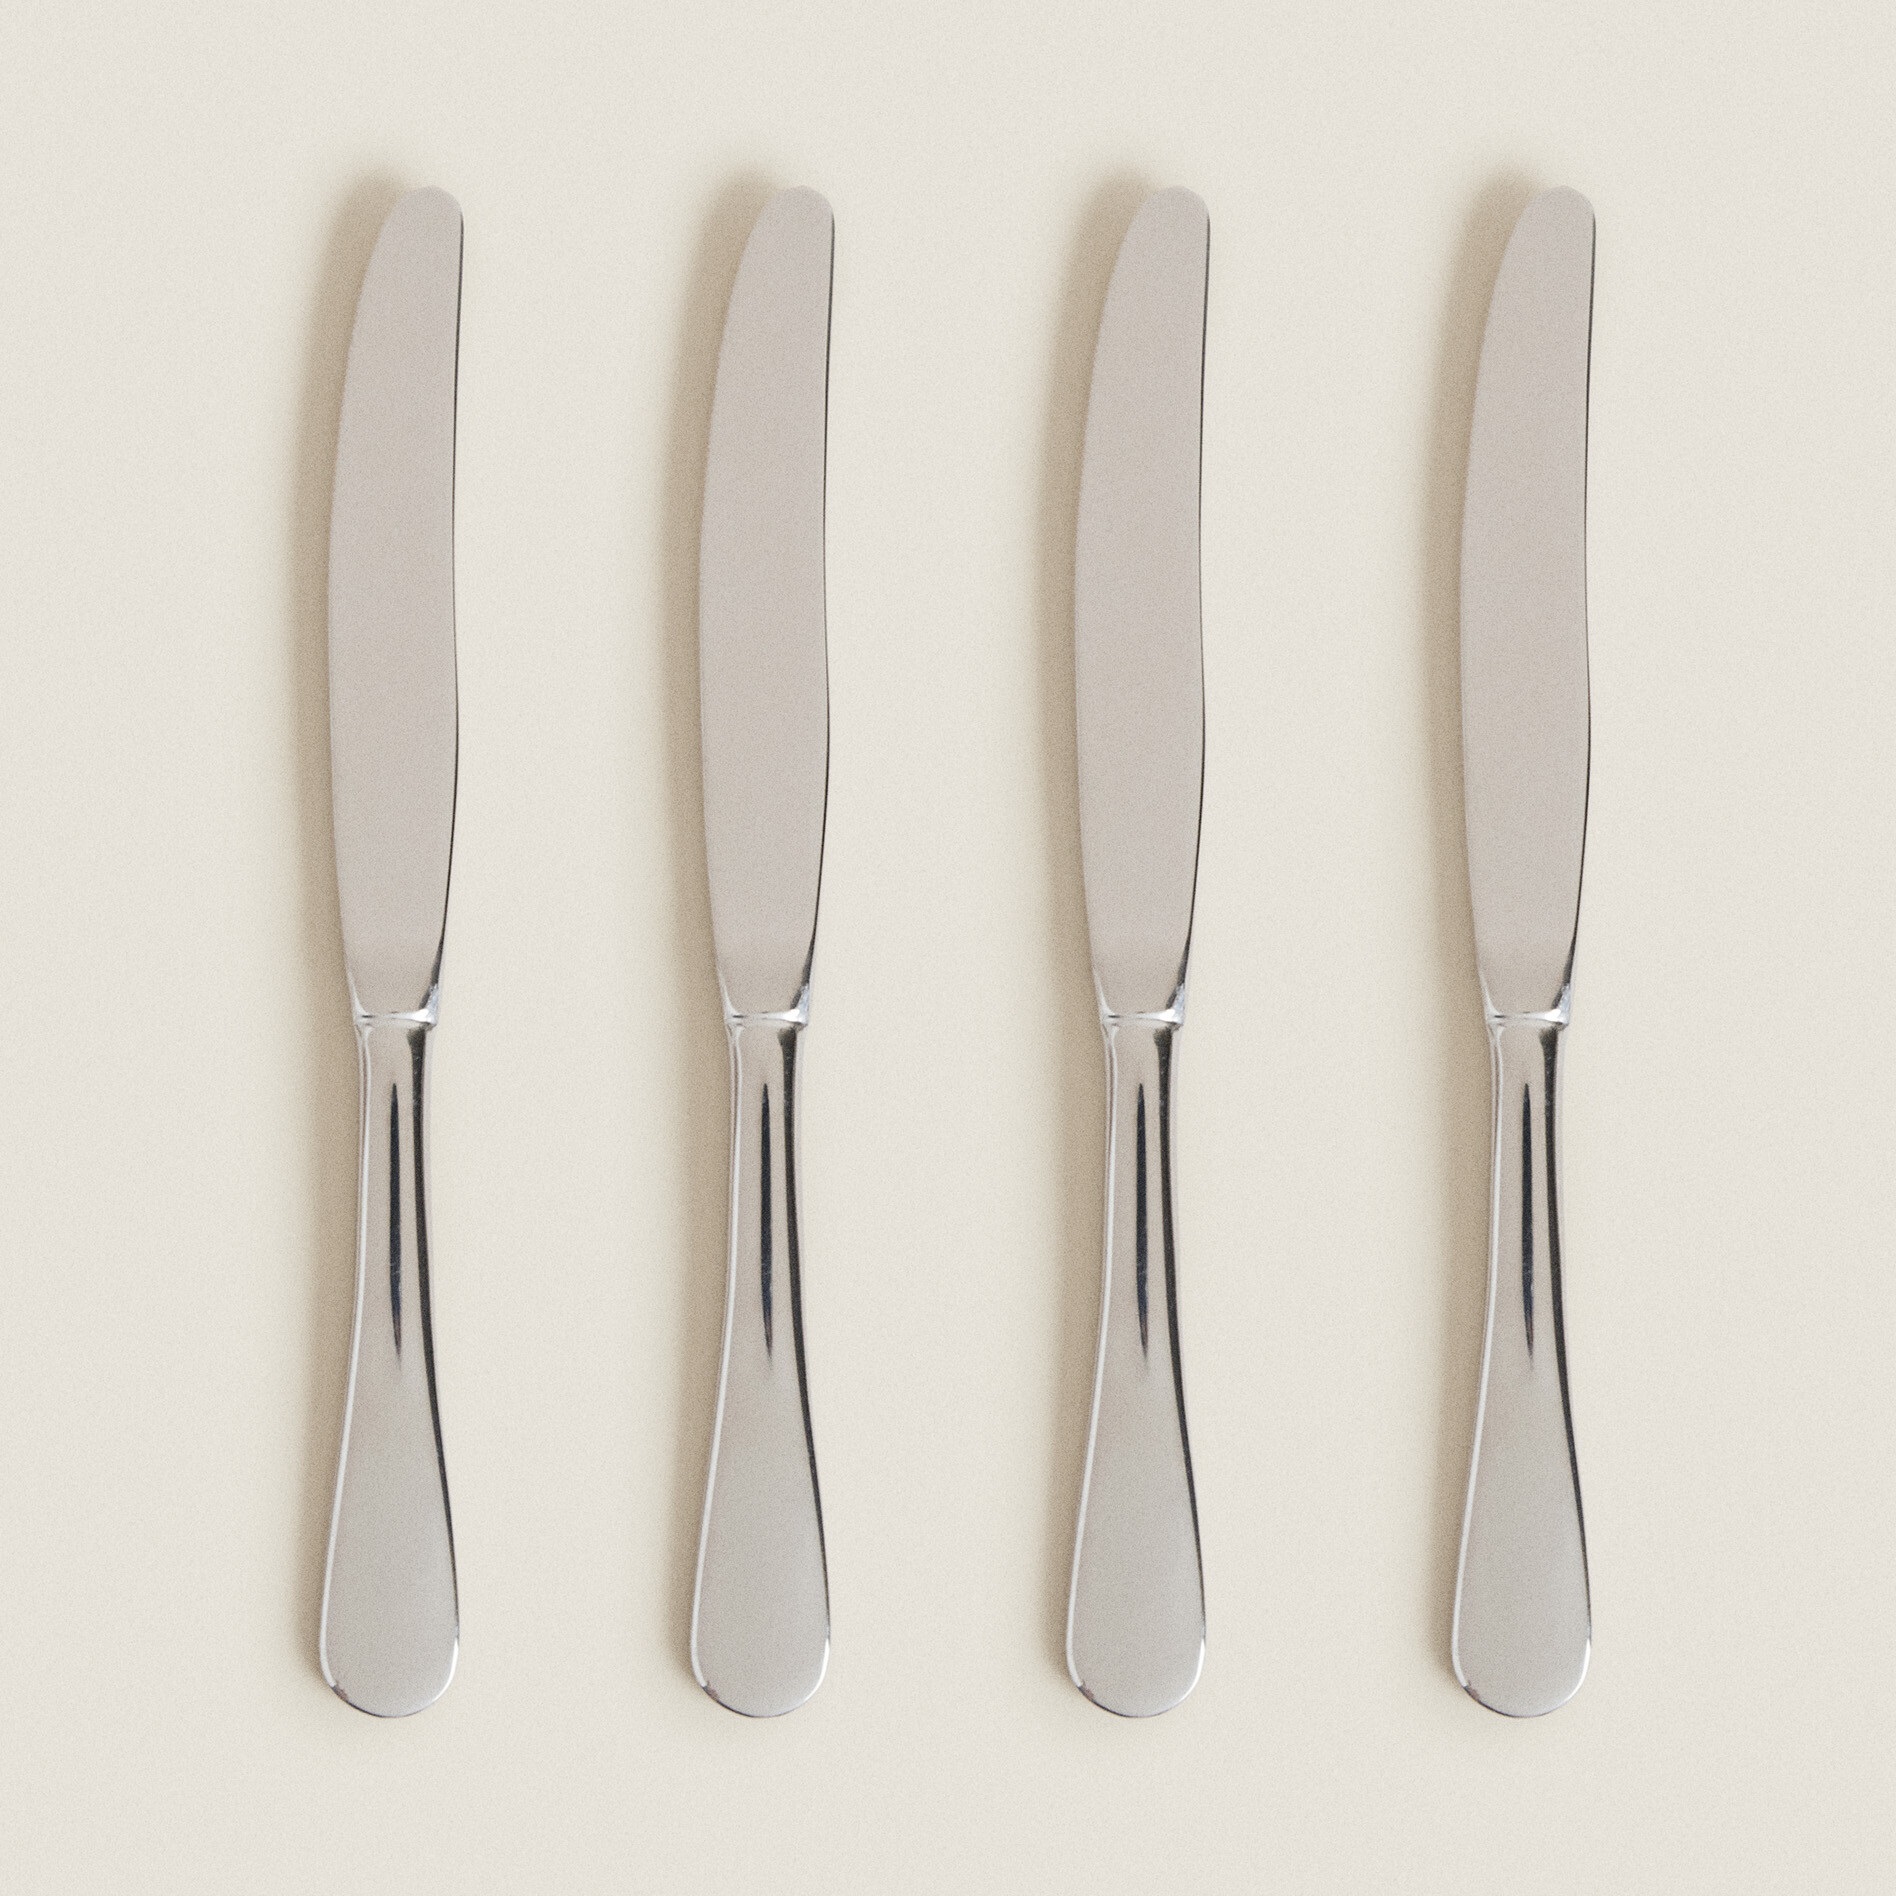 Набор ножей Zara Home 4-piece Classic Knife, 4 шт, серебристый набор столовых ножей opinel vri olive wood из 4 х штук